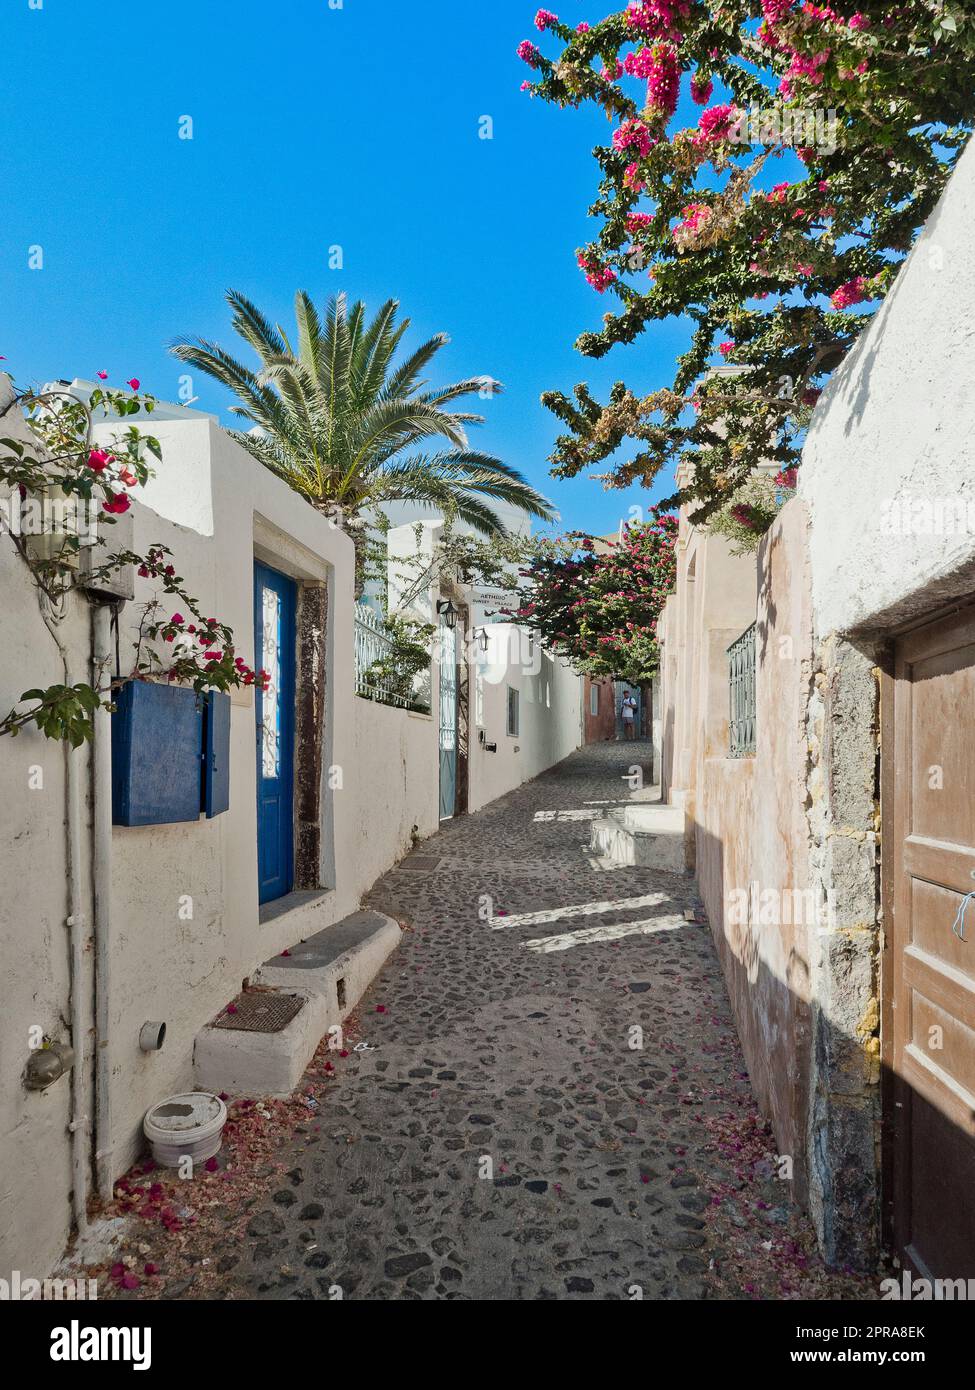 Greece, Santorini - Oia Old Town Stock Photo